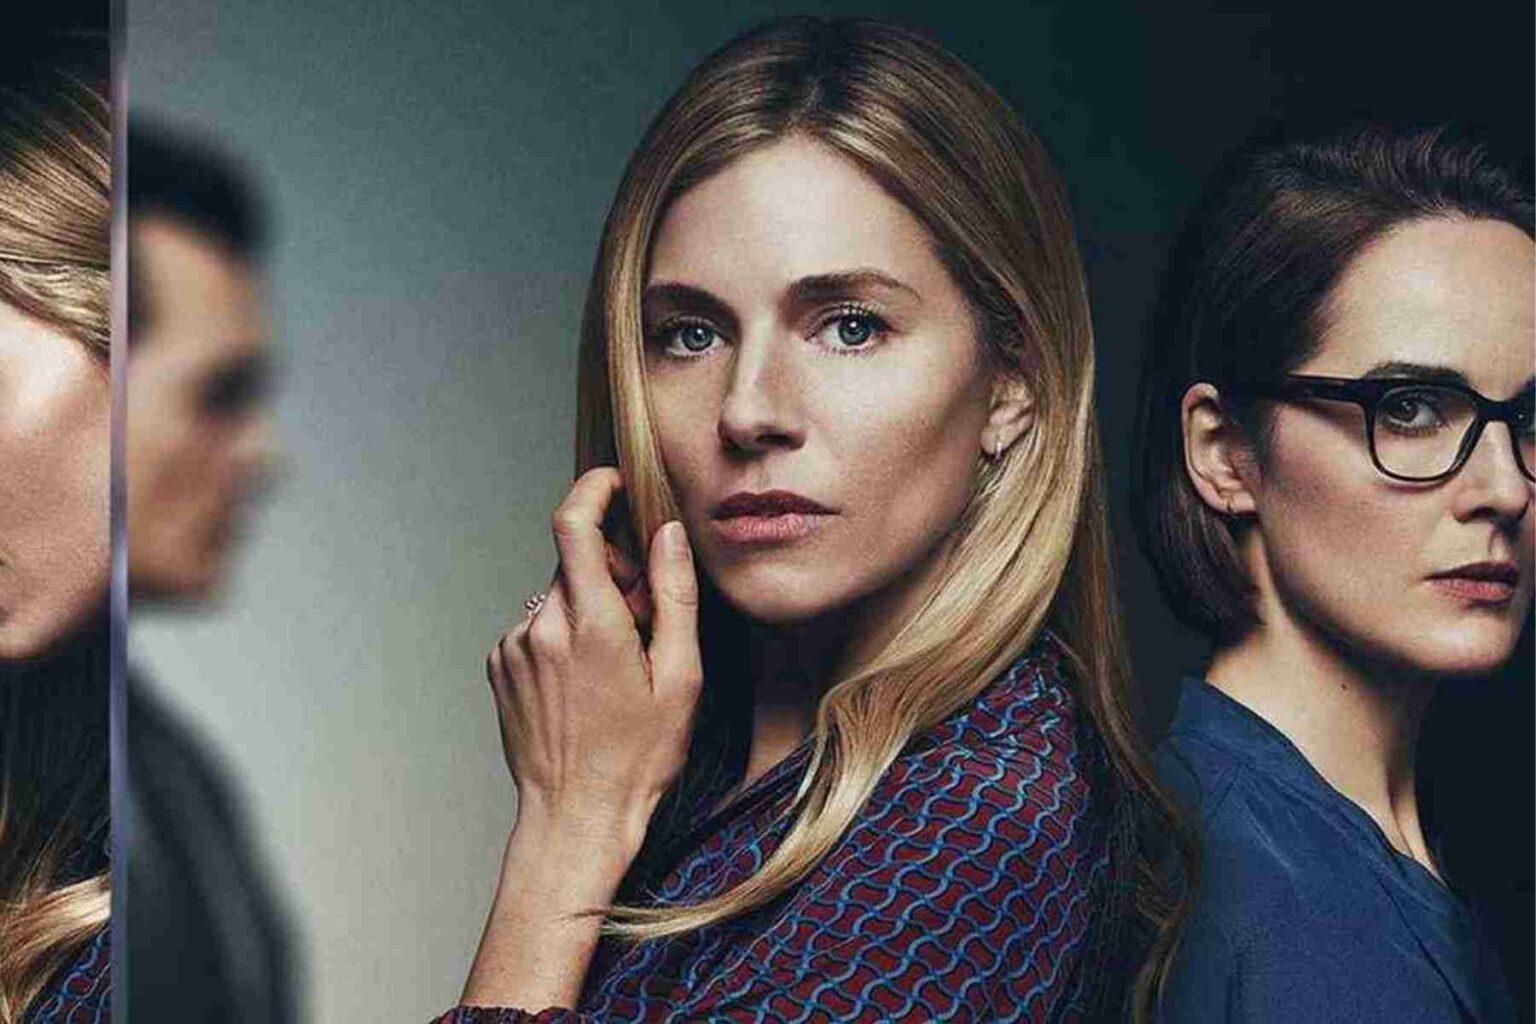 Serie tv: anatomia di uno scandalo con Sienna Miller, su Netflix